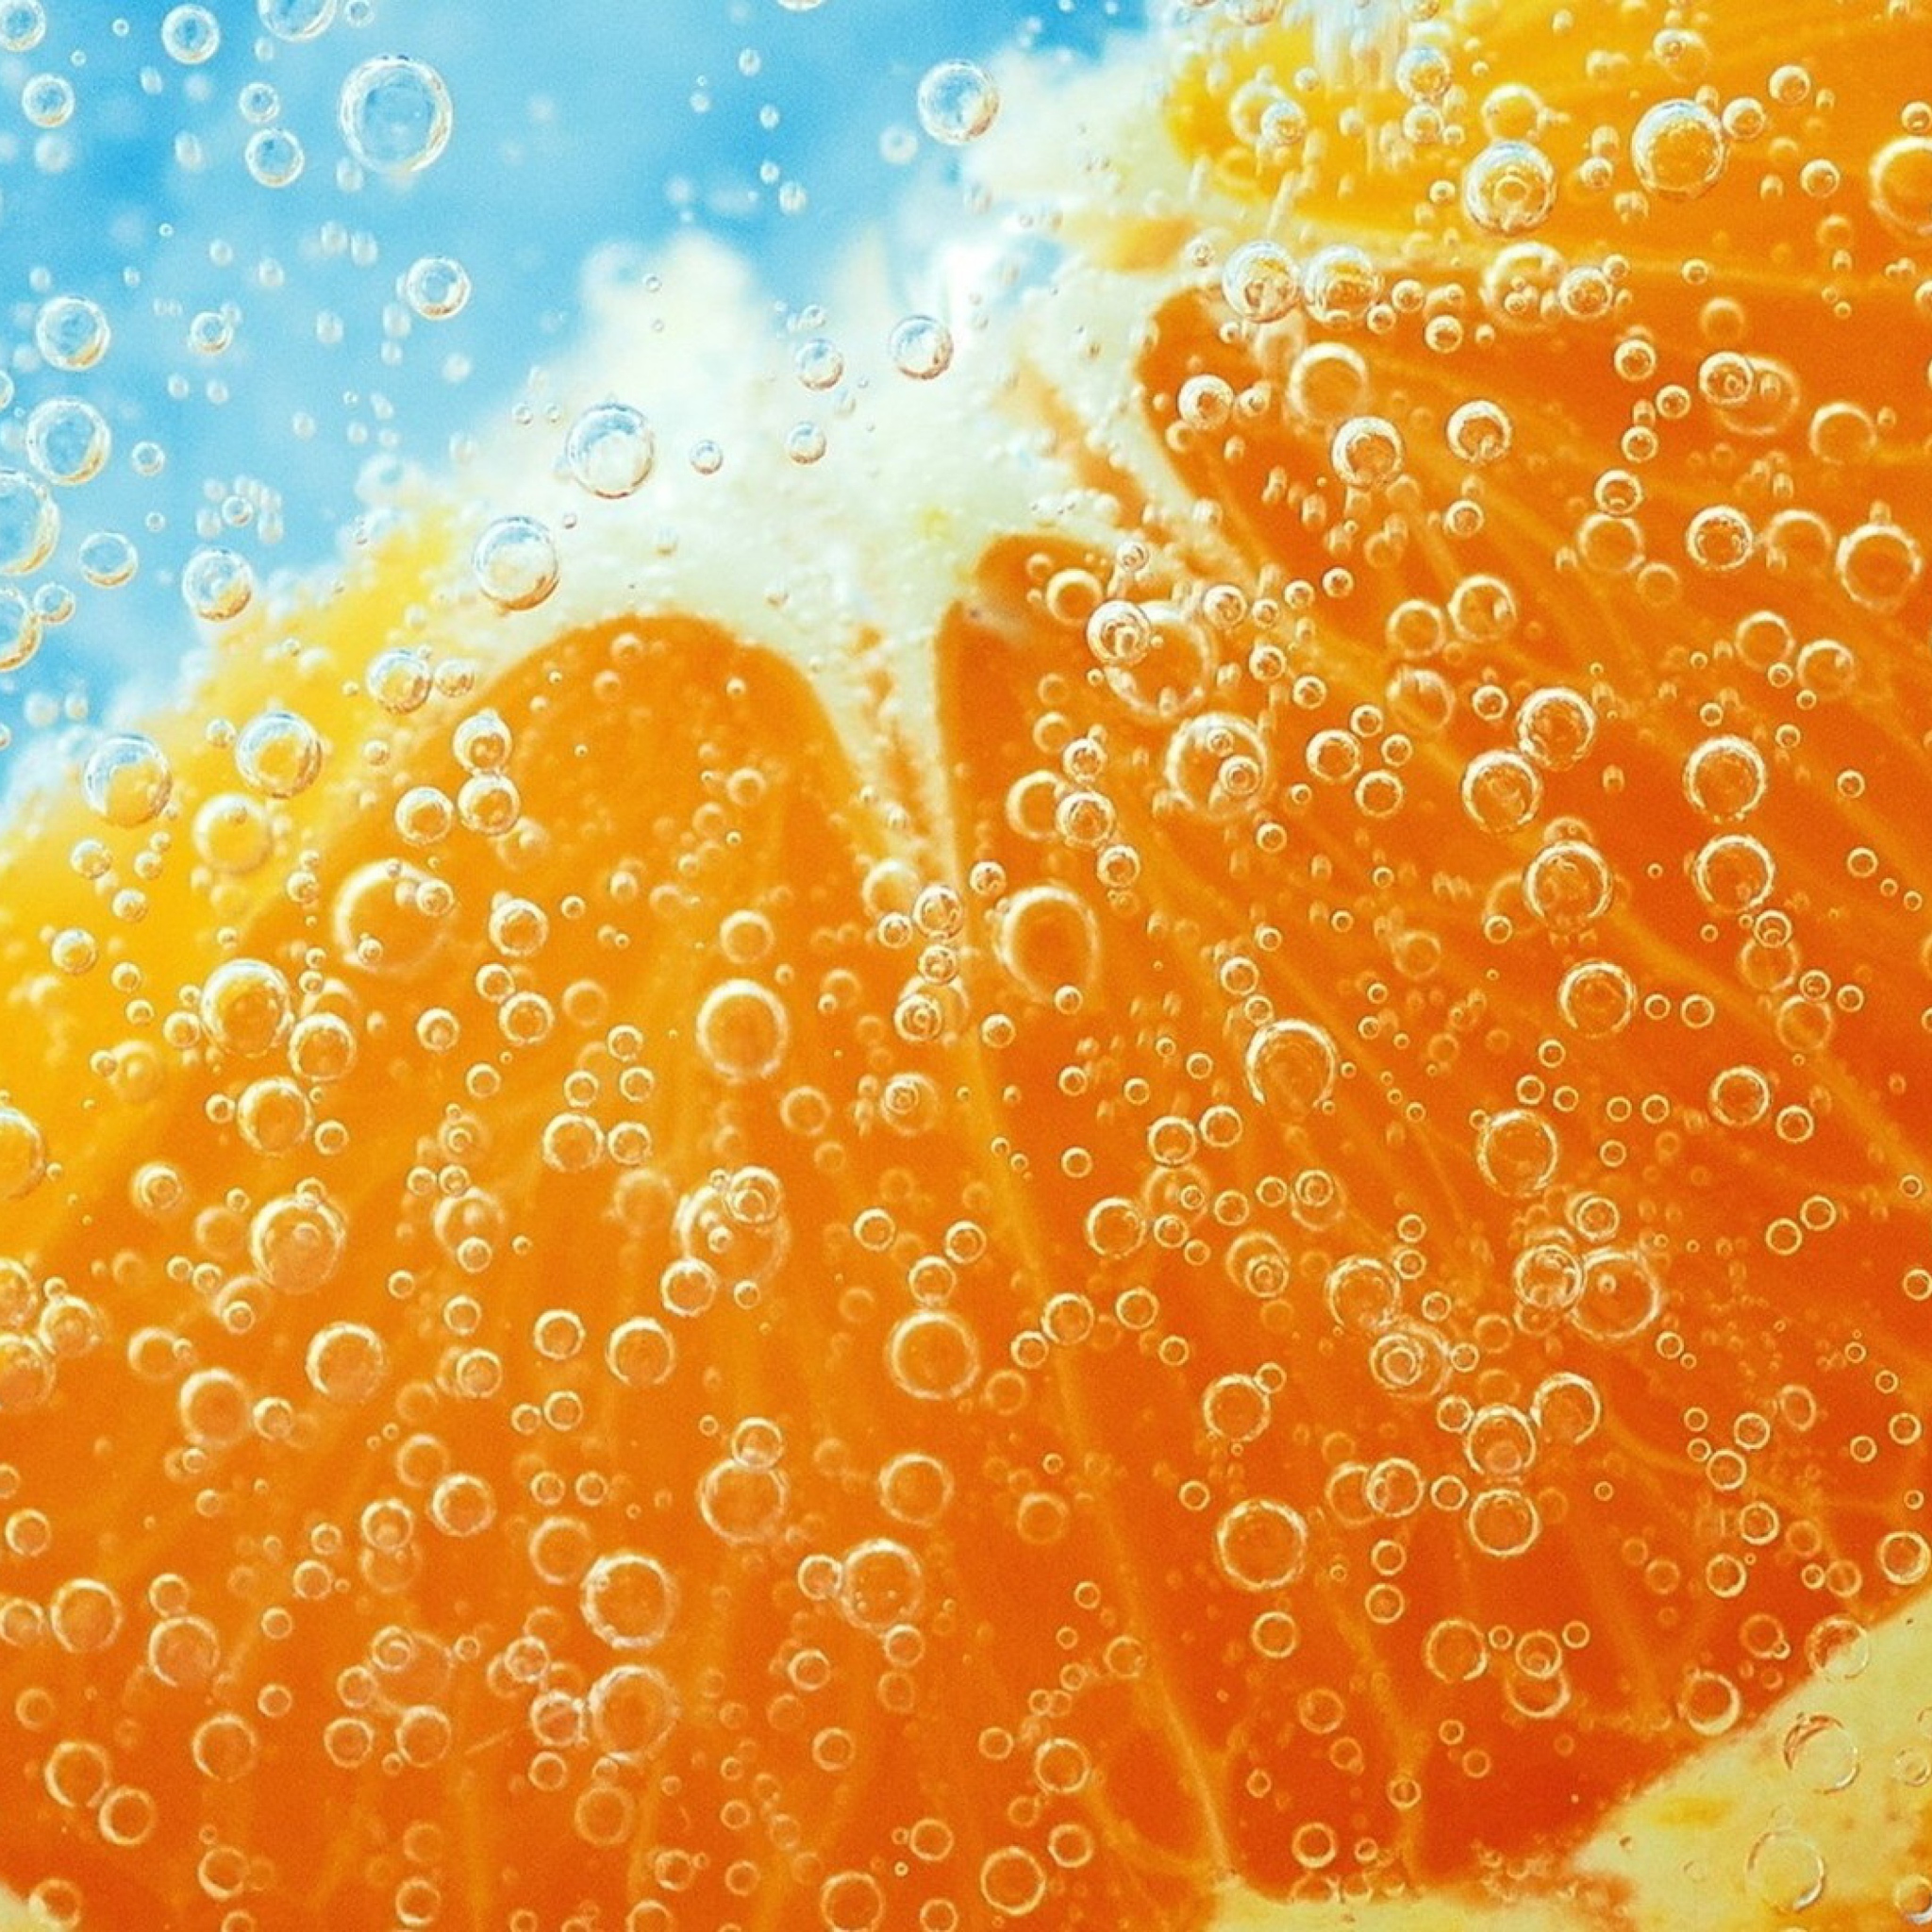 Апельсиновая газированная вода. Пузырьки газировки. Фрукты в воде. Сочные фрукты. Сочный апельсин.